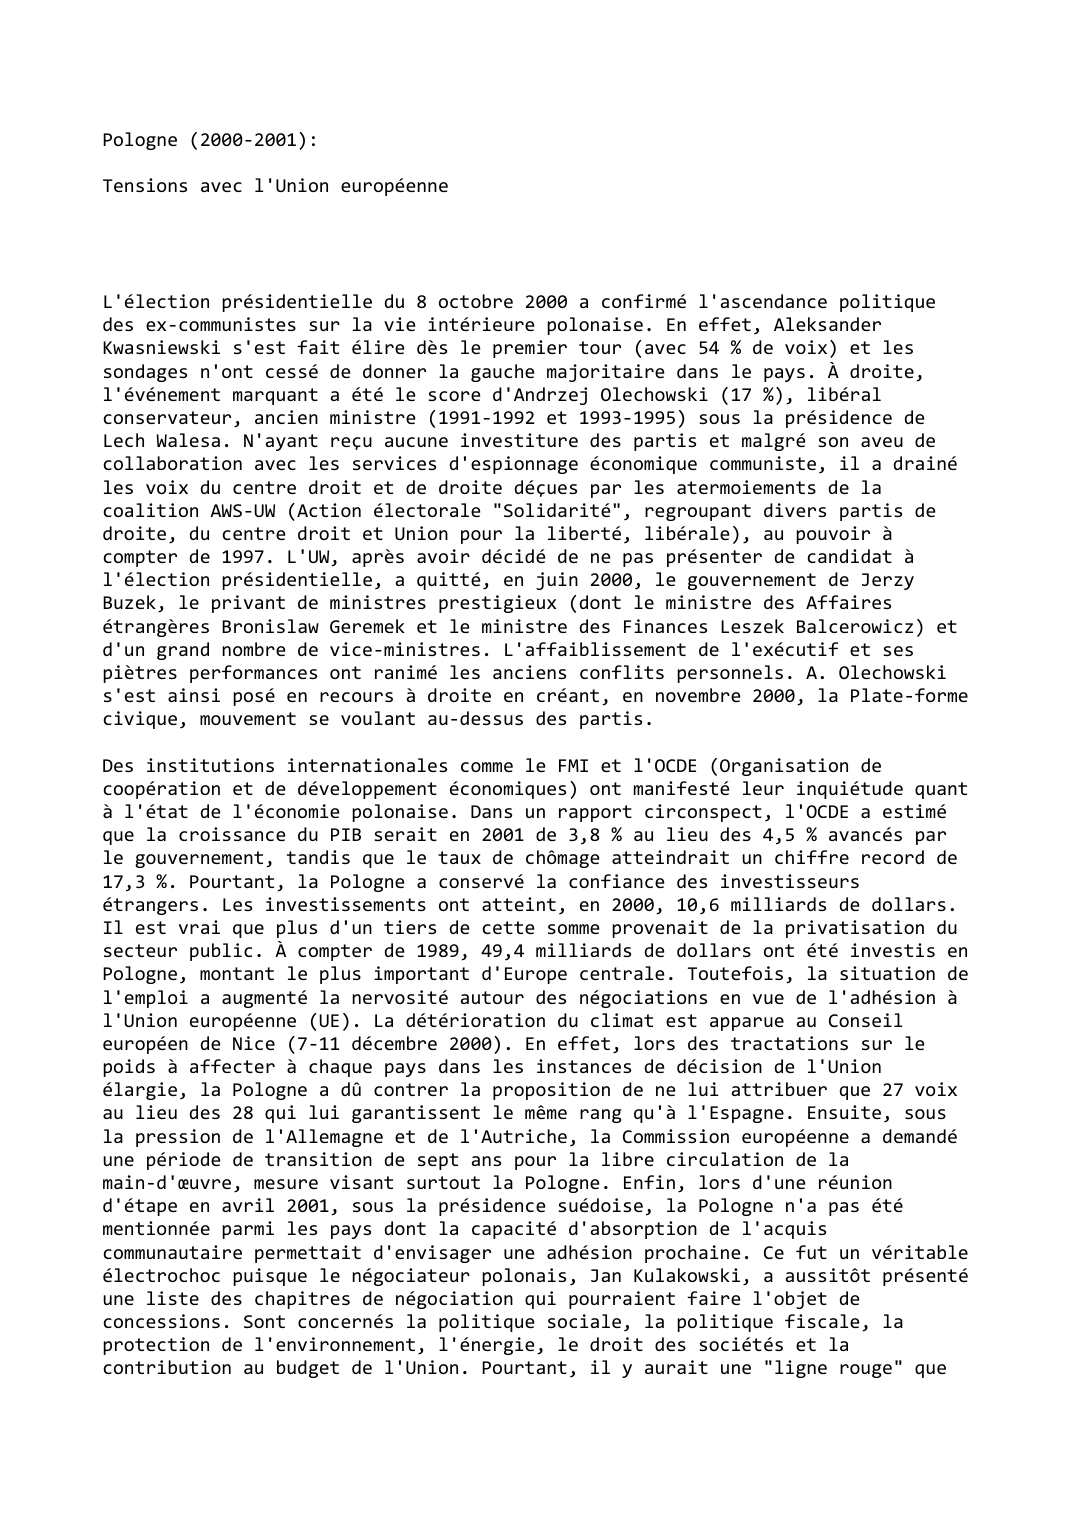 Prévisualisation du document Pologne (2000-2001):

Tensions avec l'Union européenne